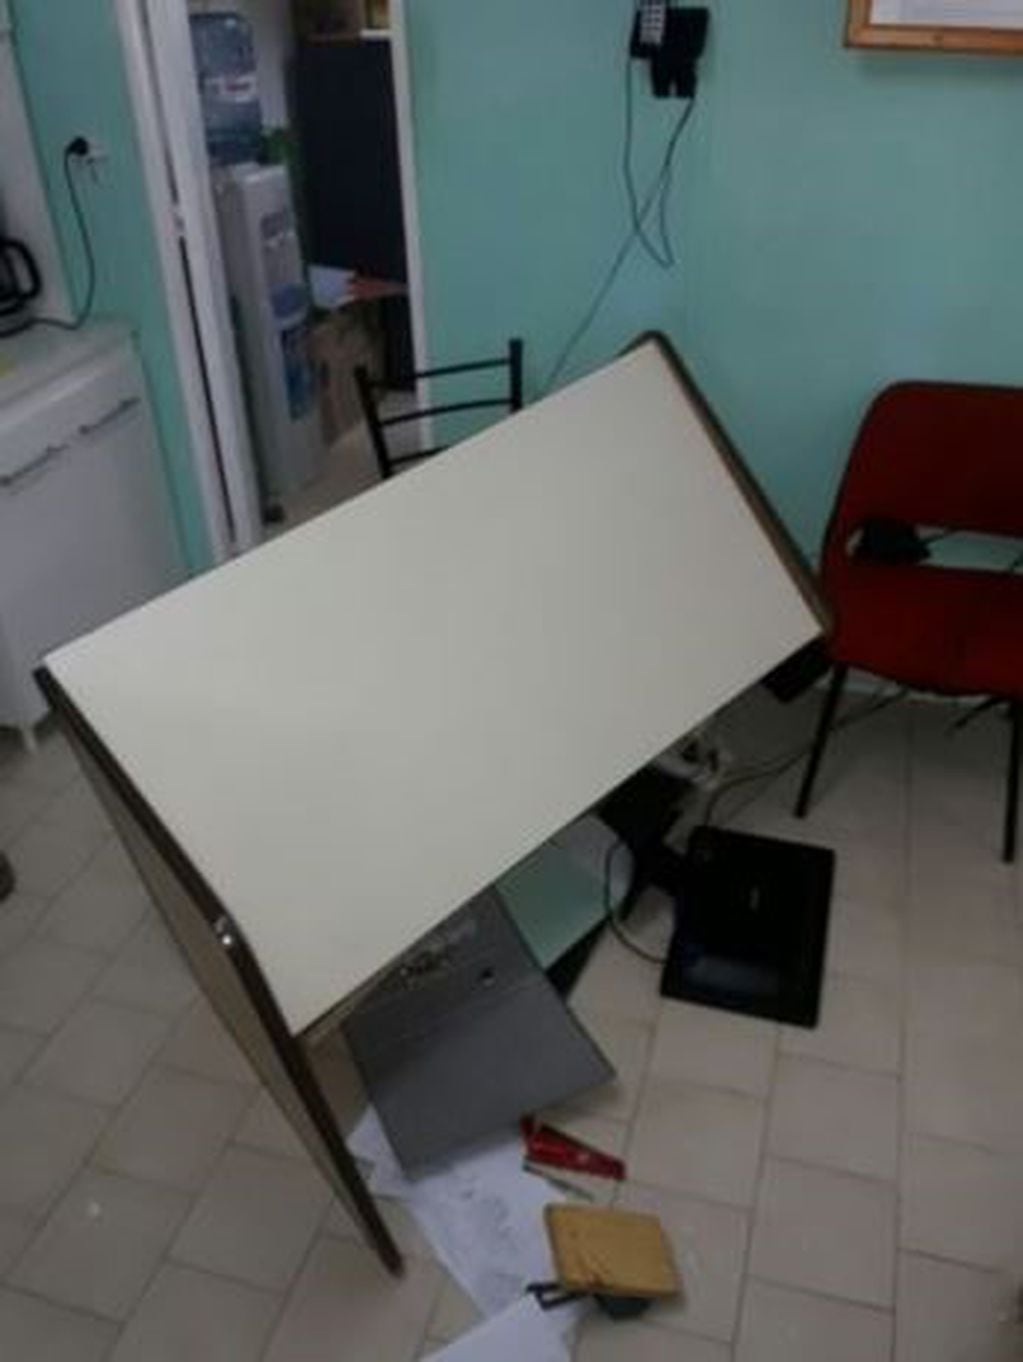 Locura en la municipalidad de Senillosa: un empleado entró armado y rompió todo